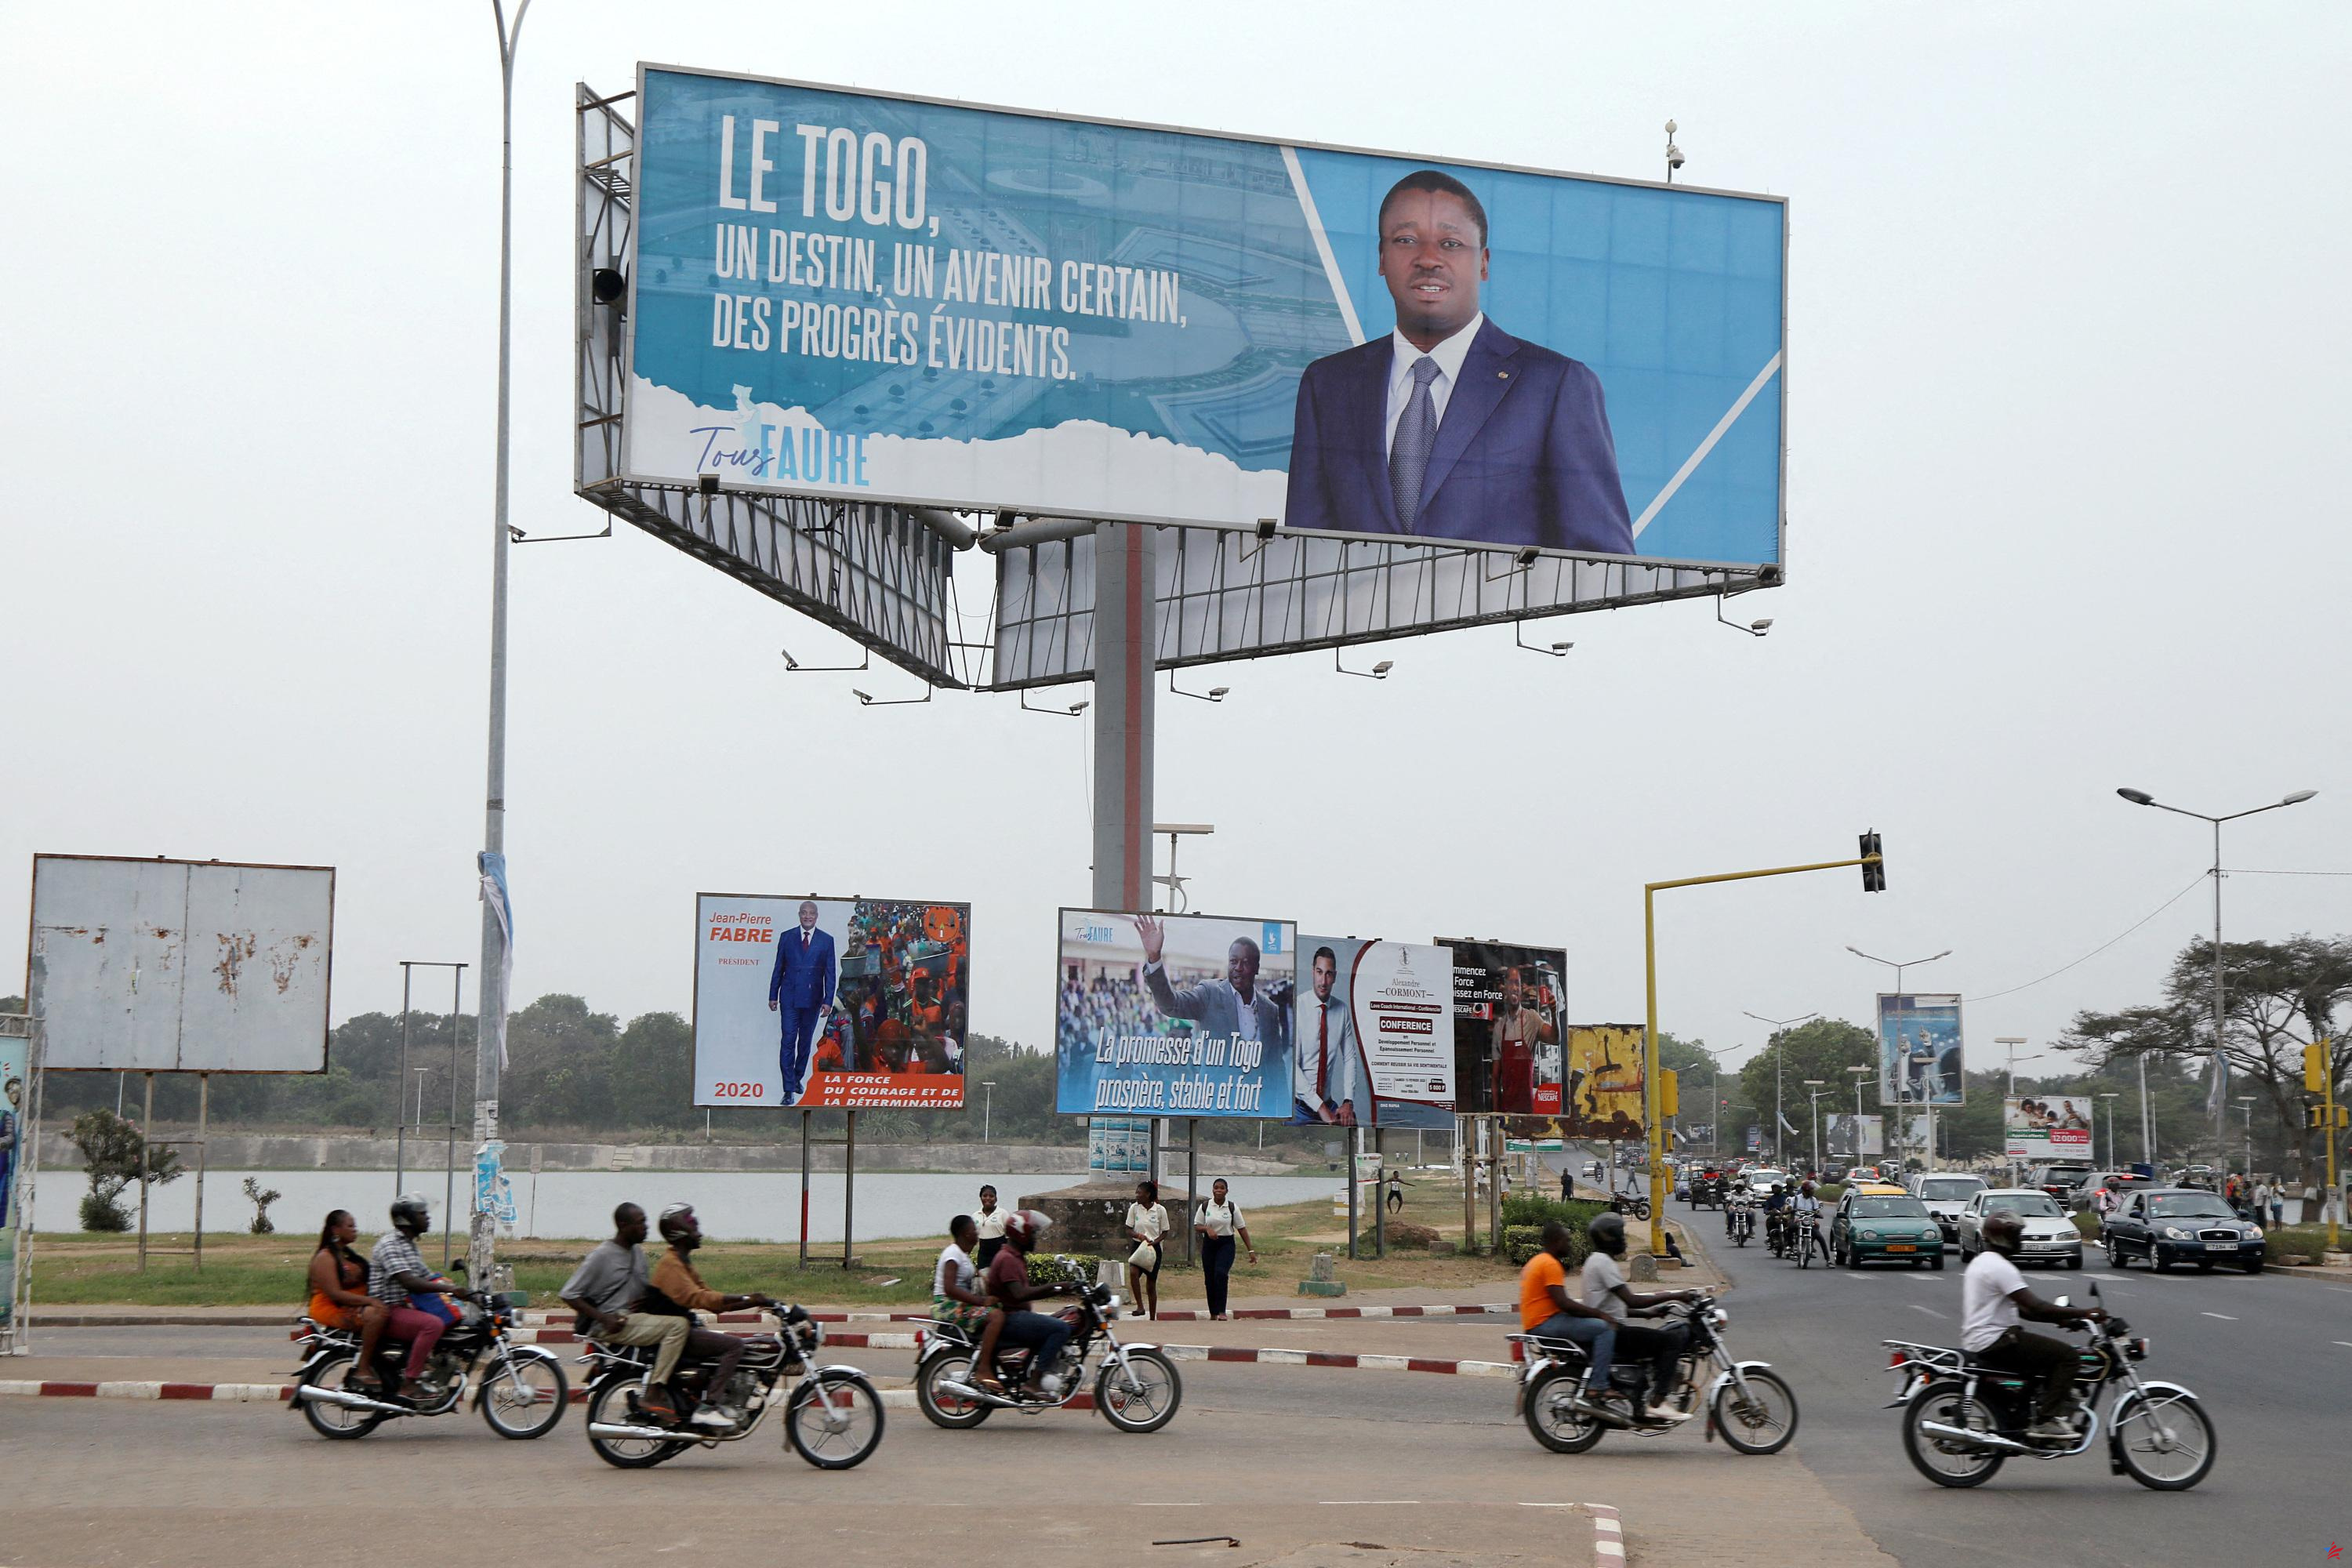 Togo: el país pasa a un régimen parlamentario tras la adopción de una nueva Constitución